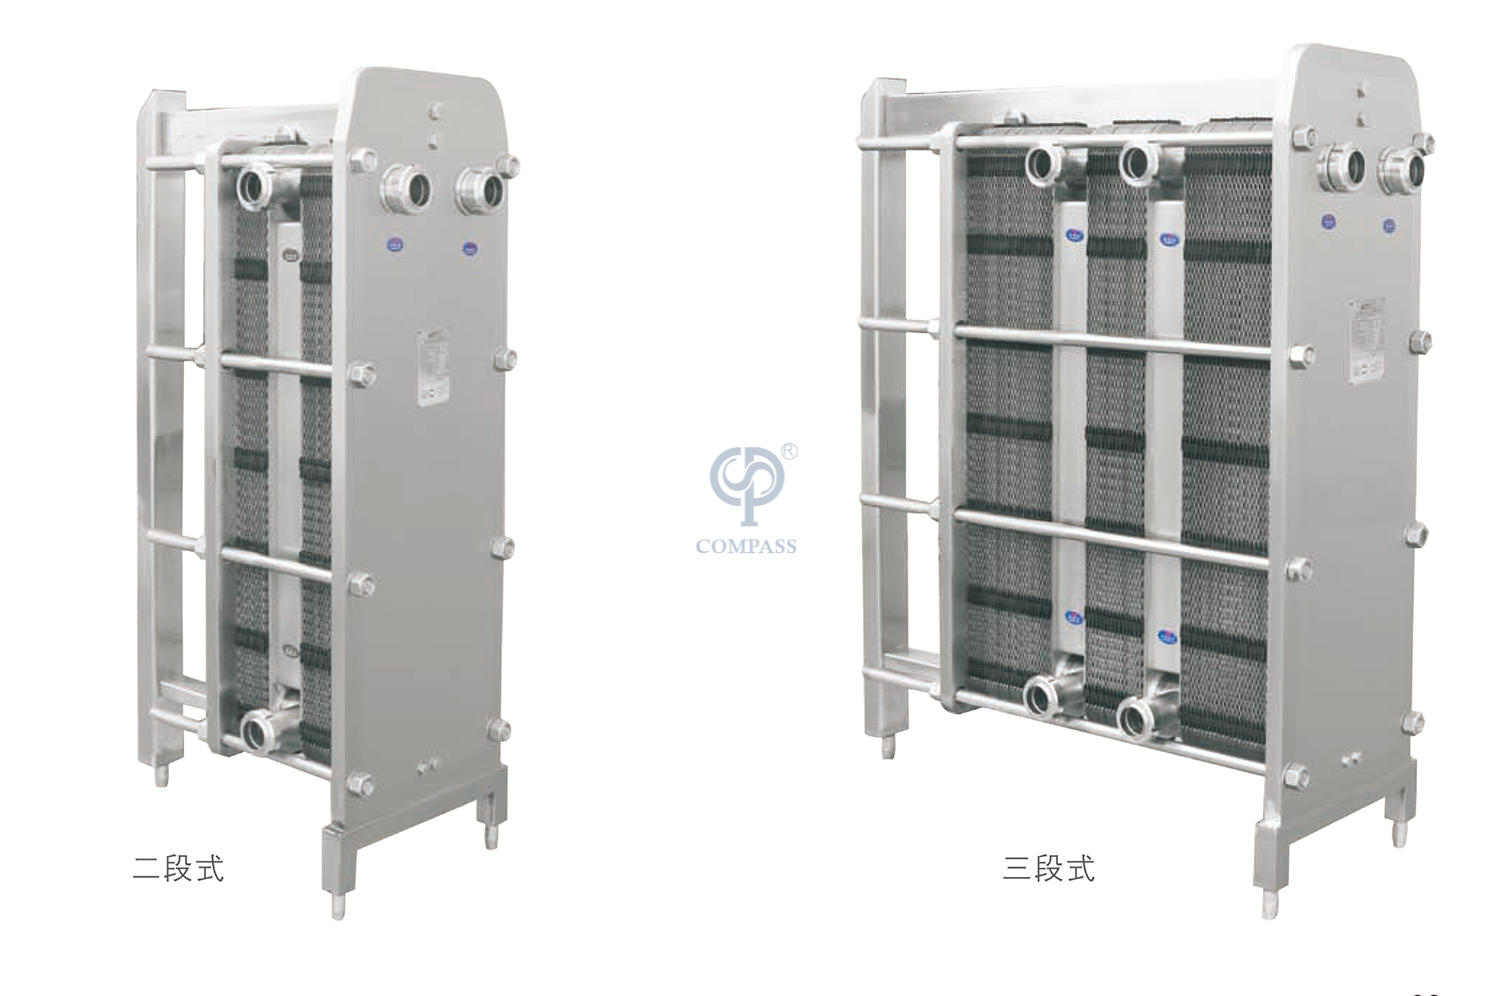 Cambiador de calor de placas de tres etapas de etapas múltiples de acero inoxidable para pasteurización de leche